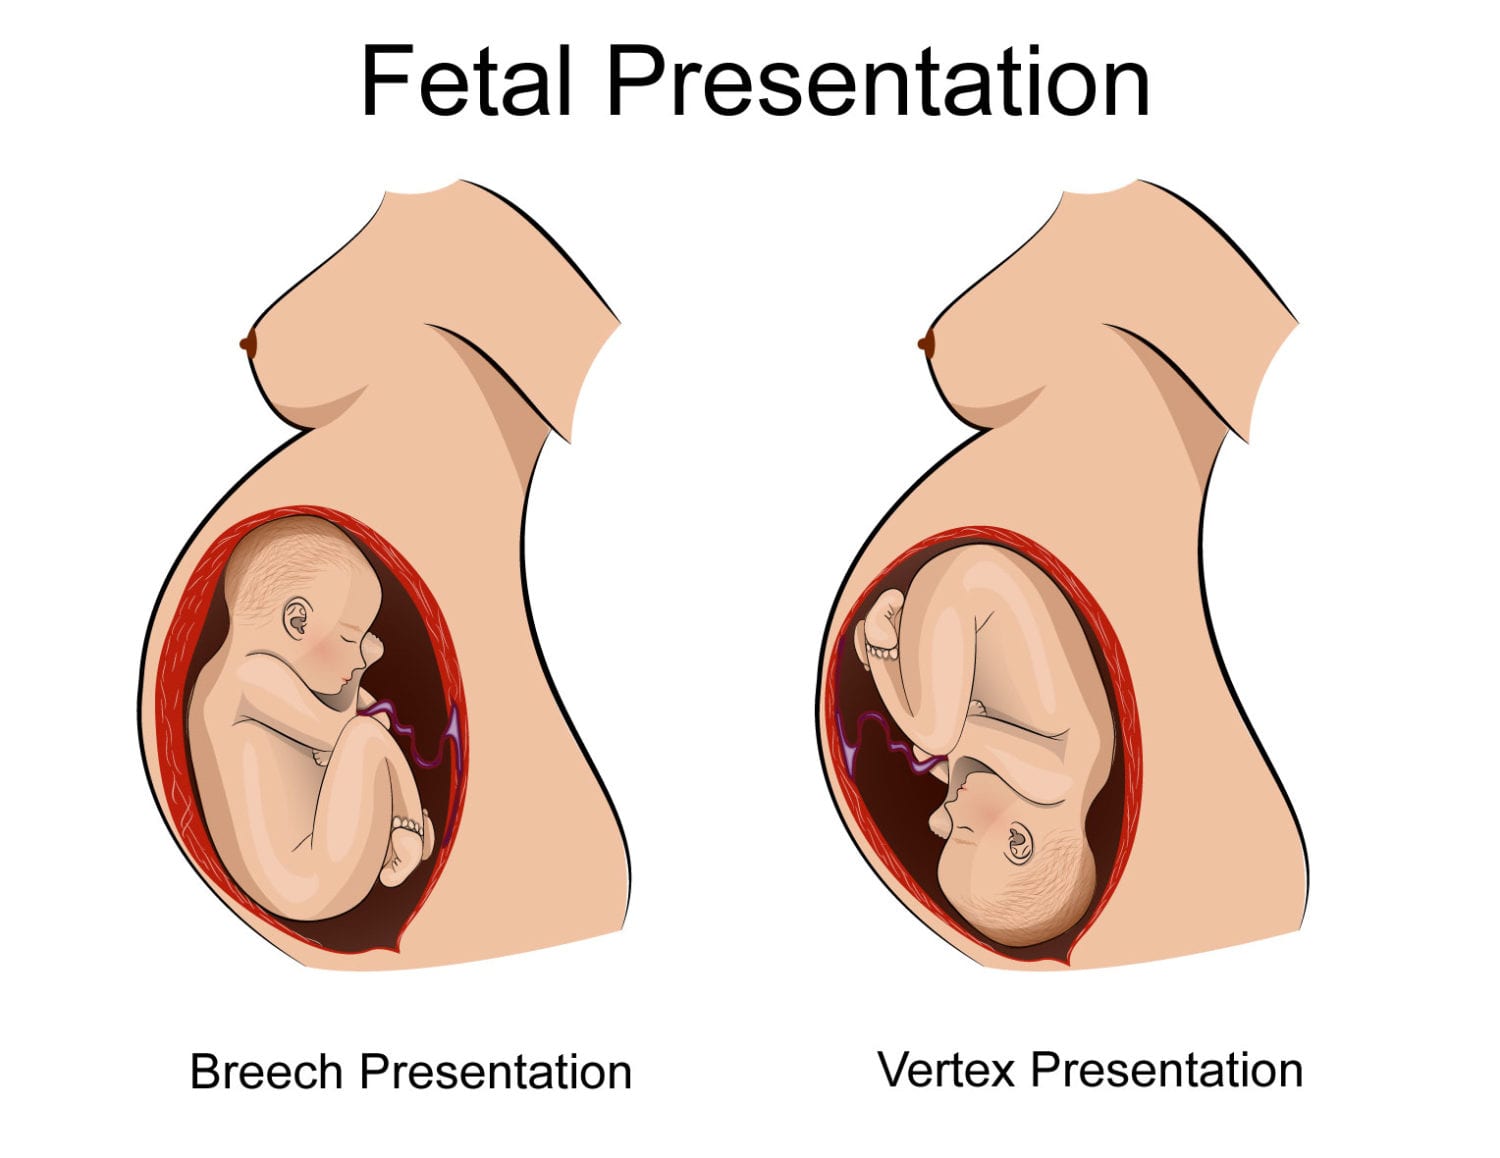 Breech presentation and birth asphyxia (hypoxic ischemic encephalopathy)